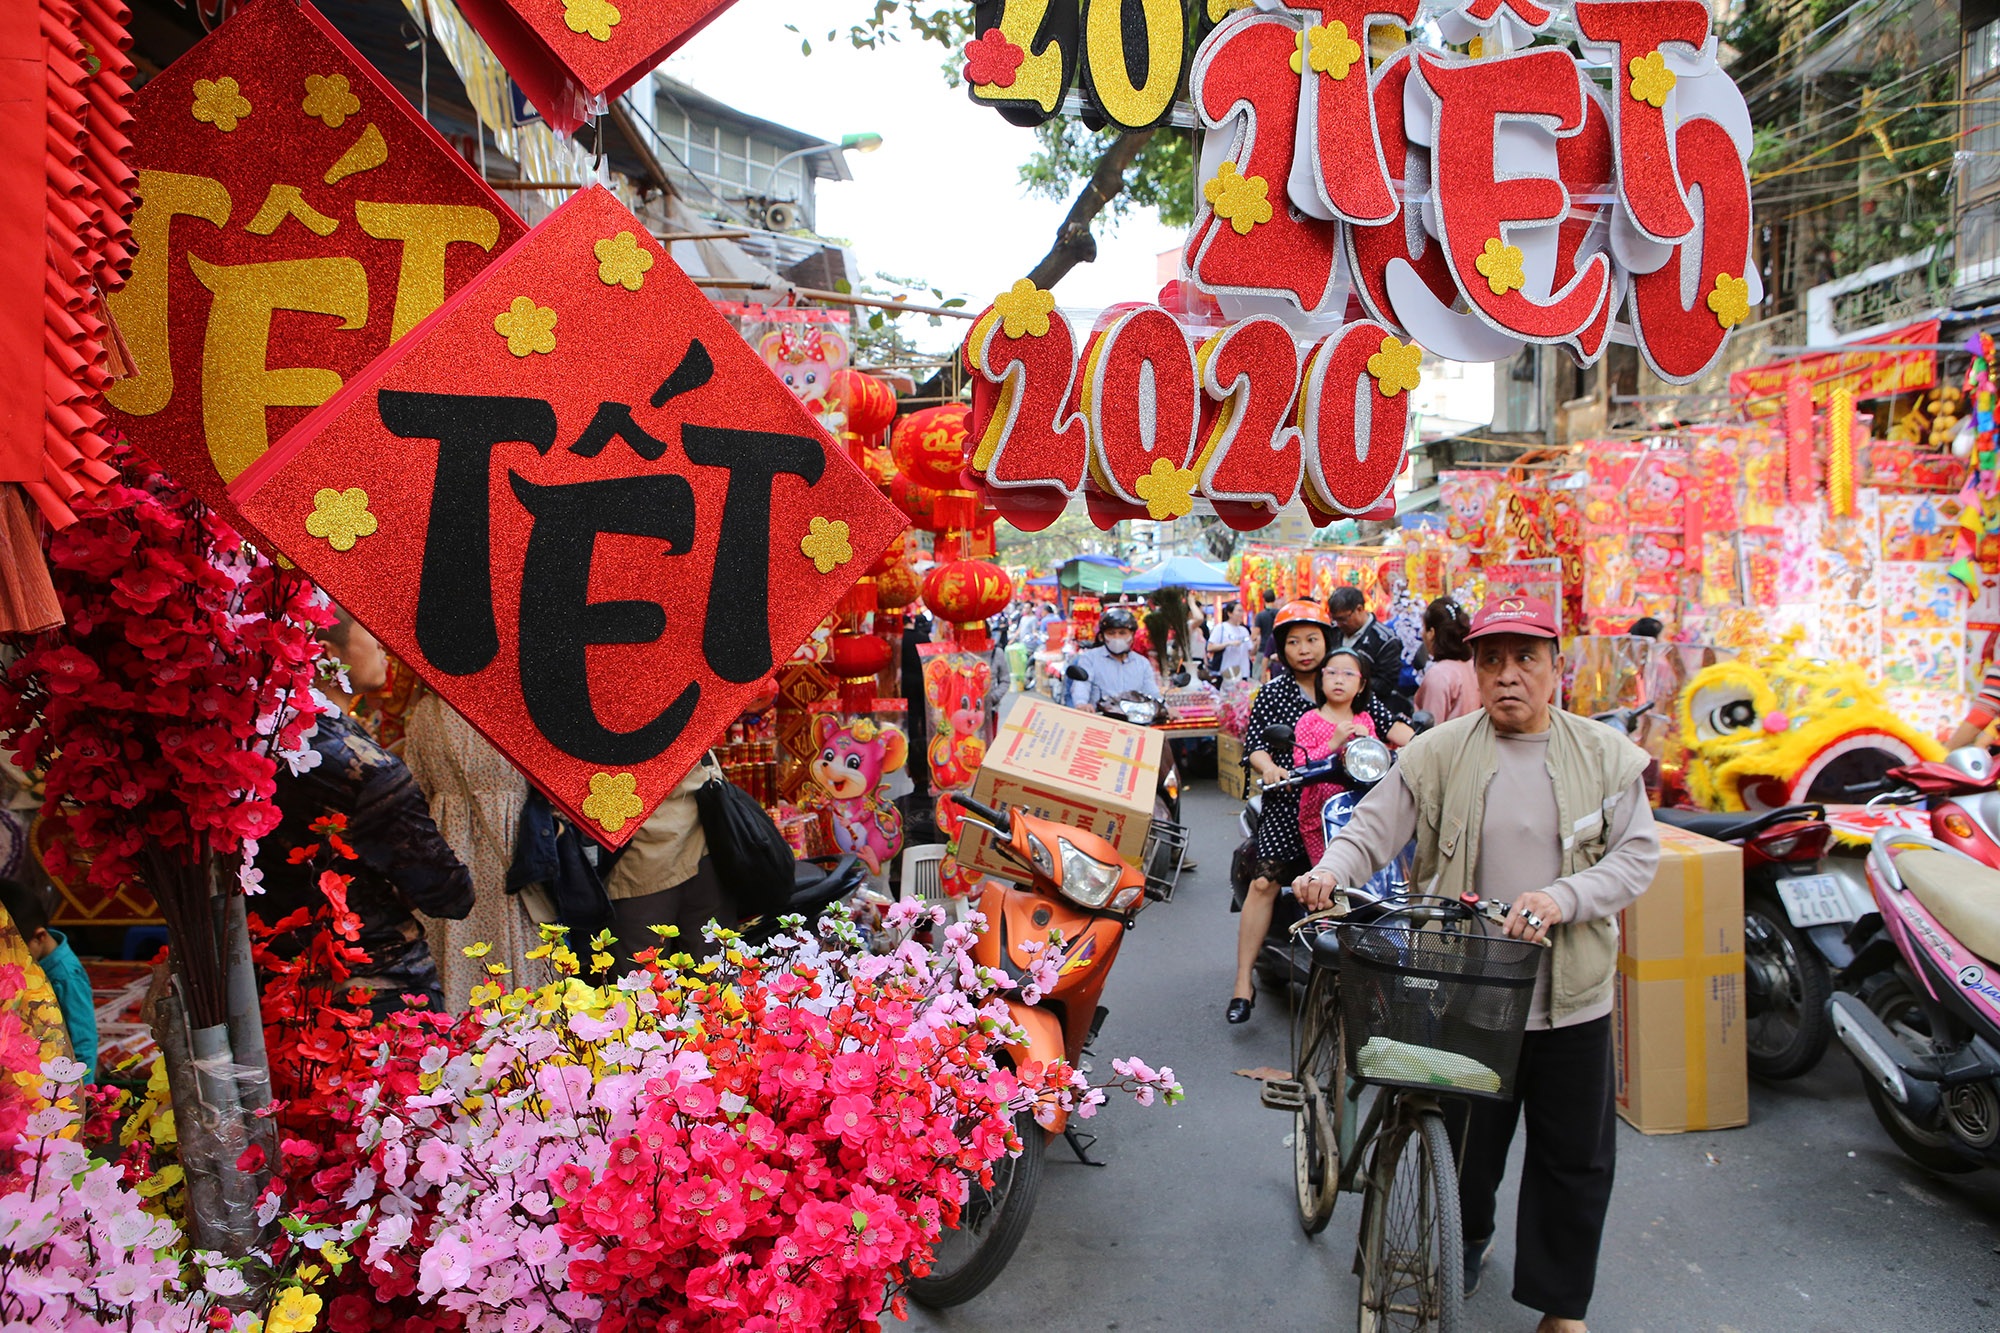 Nồng nàn vị Tết ở chợ hoa lâu đời nhất Hà Nội Báo Dân trí